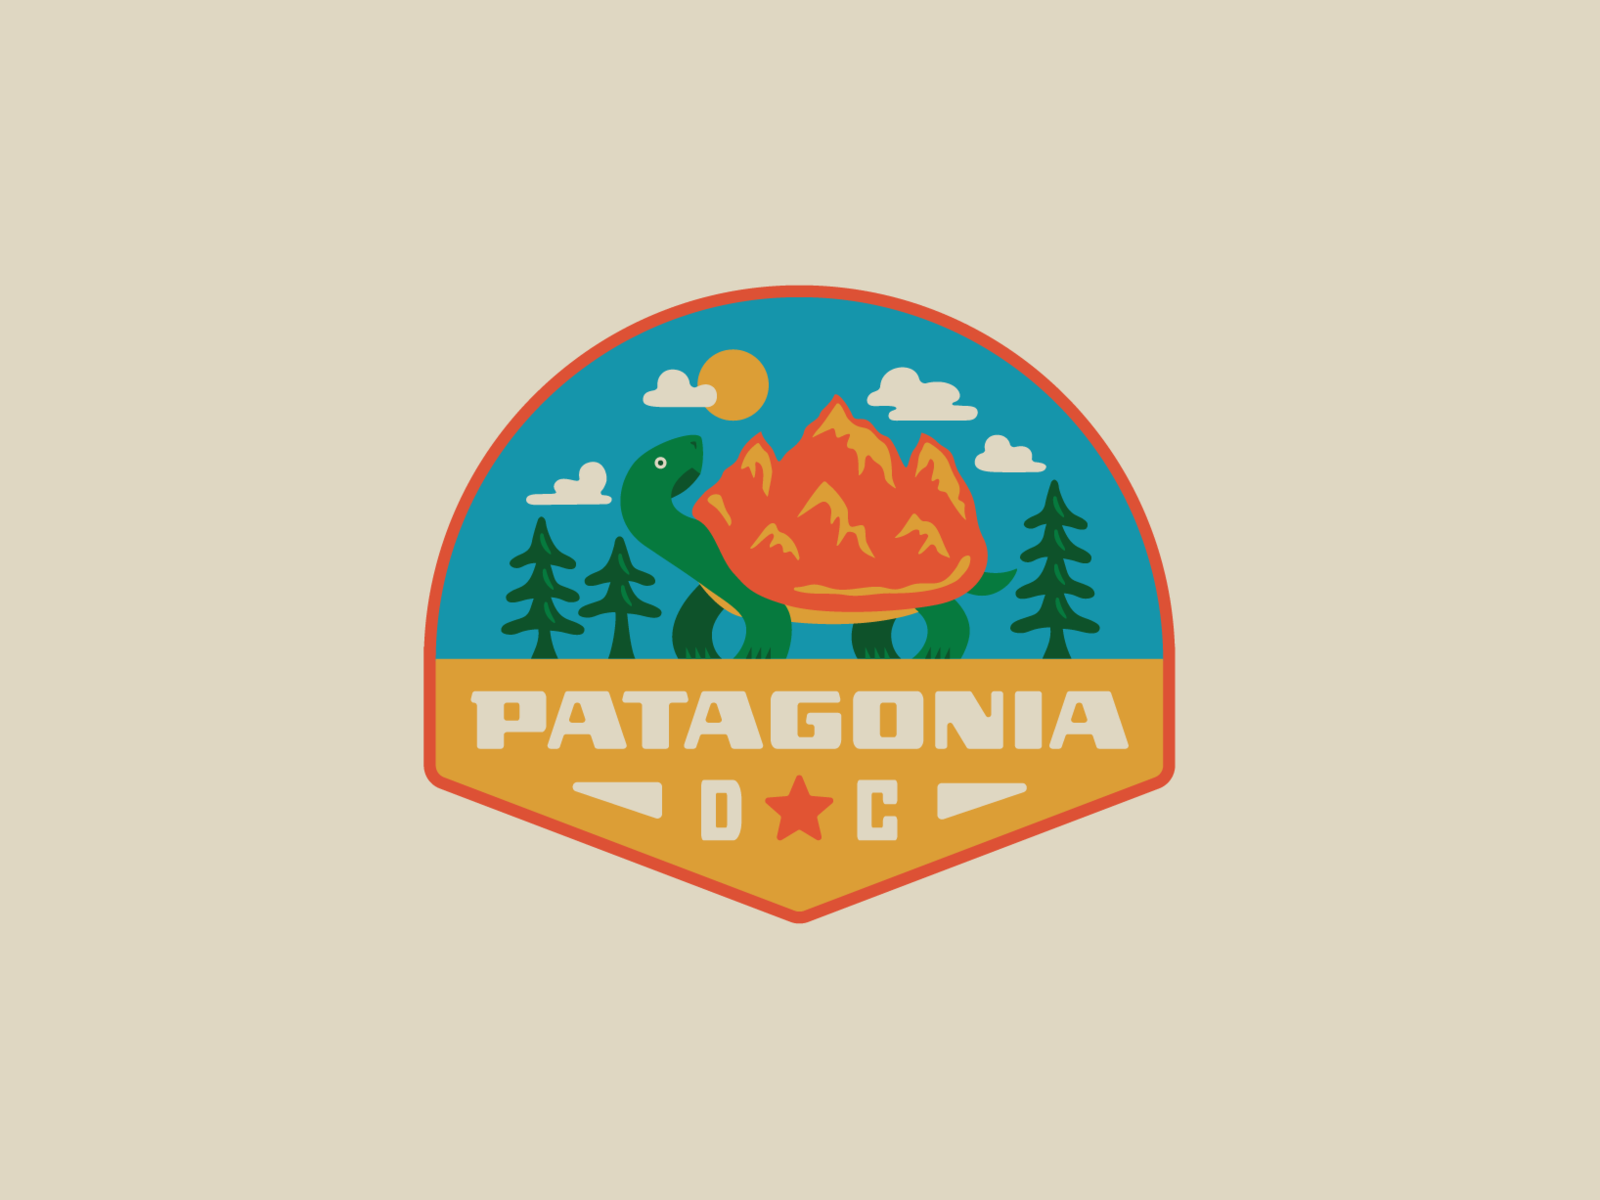 Patagonia DC II by Lauren Dickens on Dribbble